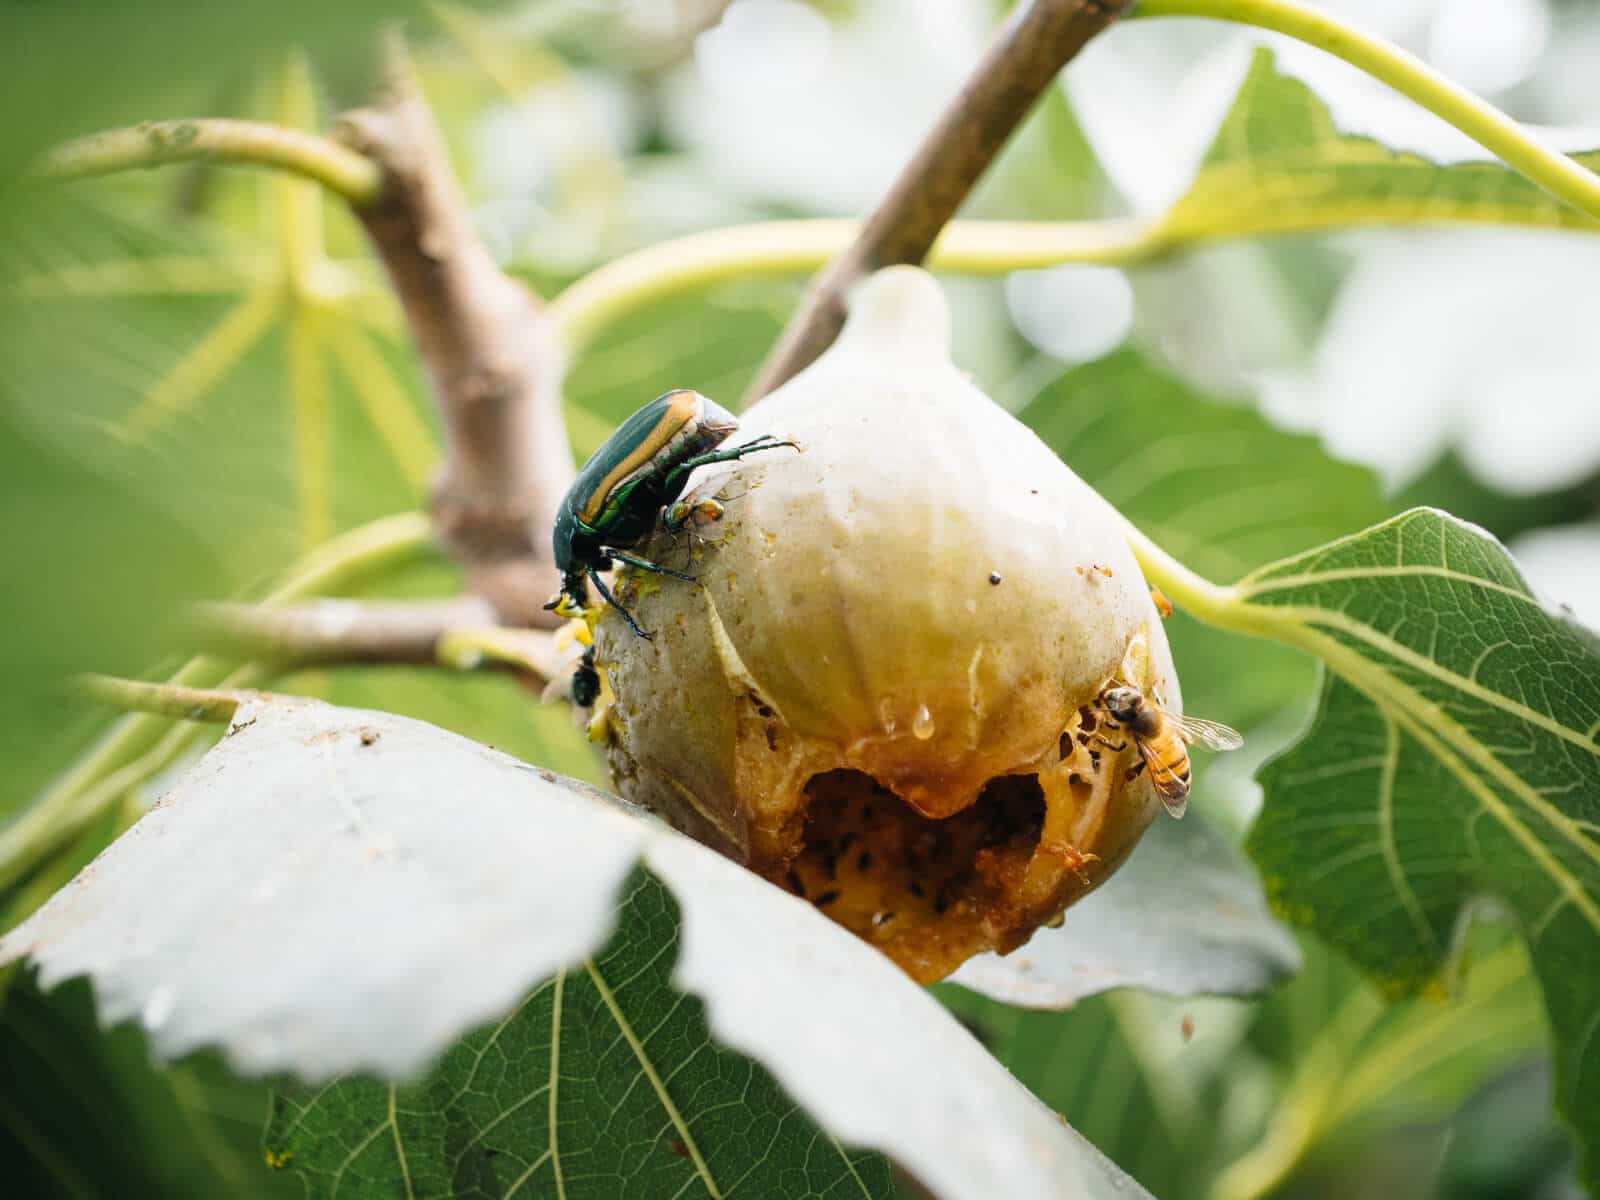 Fig beetle feeding on overripe fig